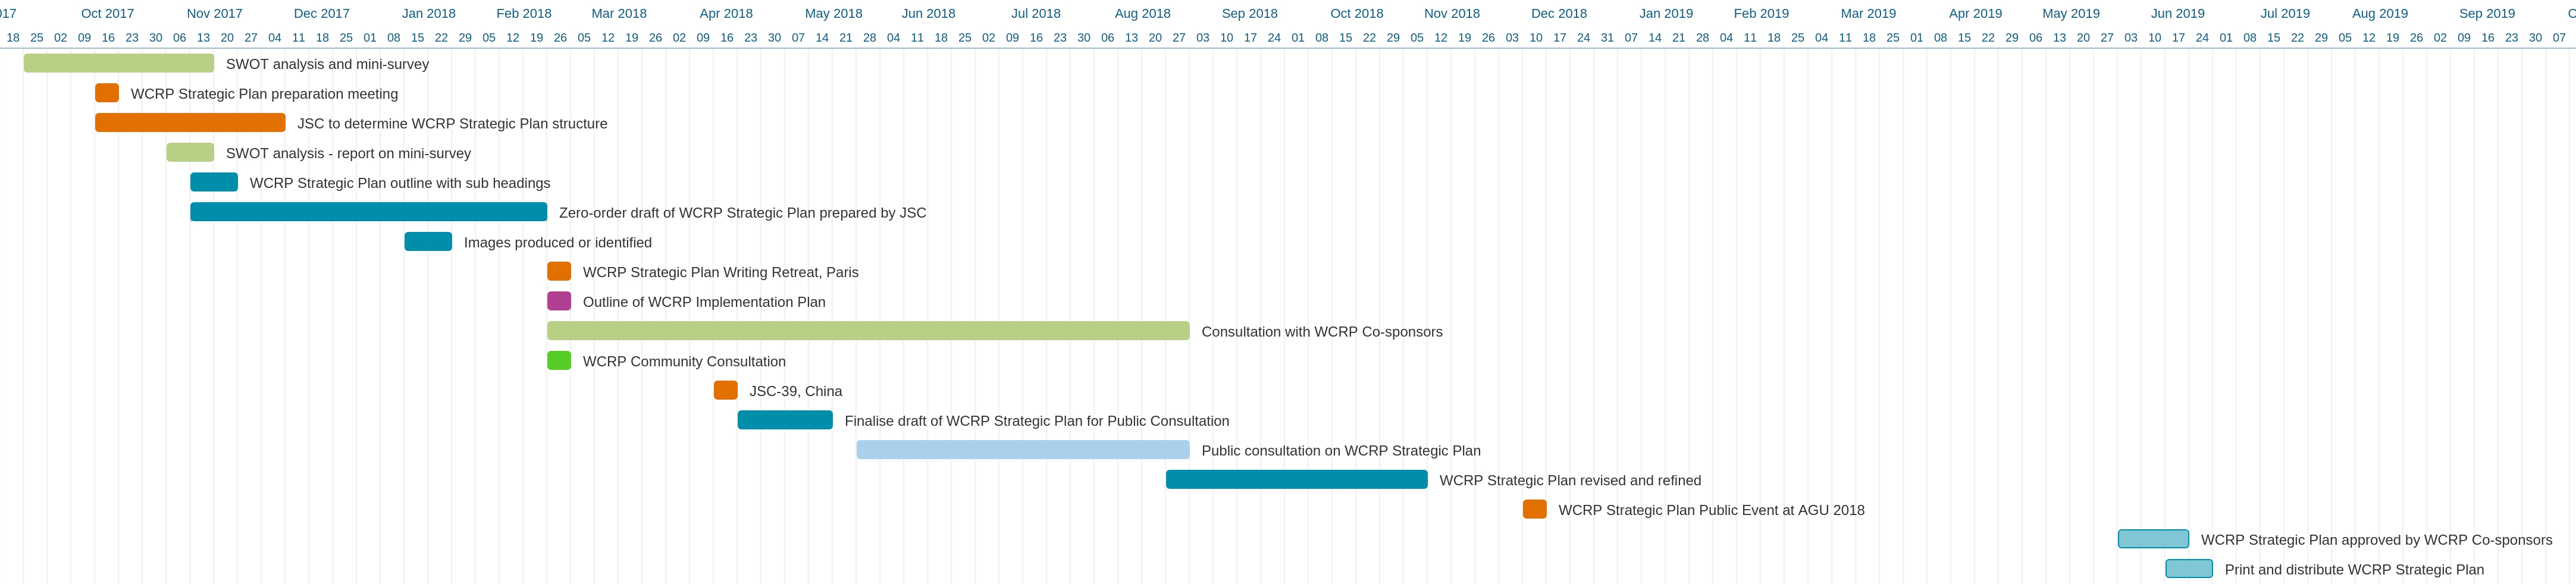 Gantt Chart of WCRP Strategic Plan